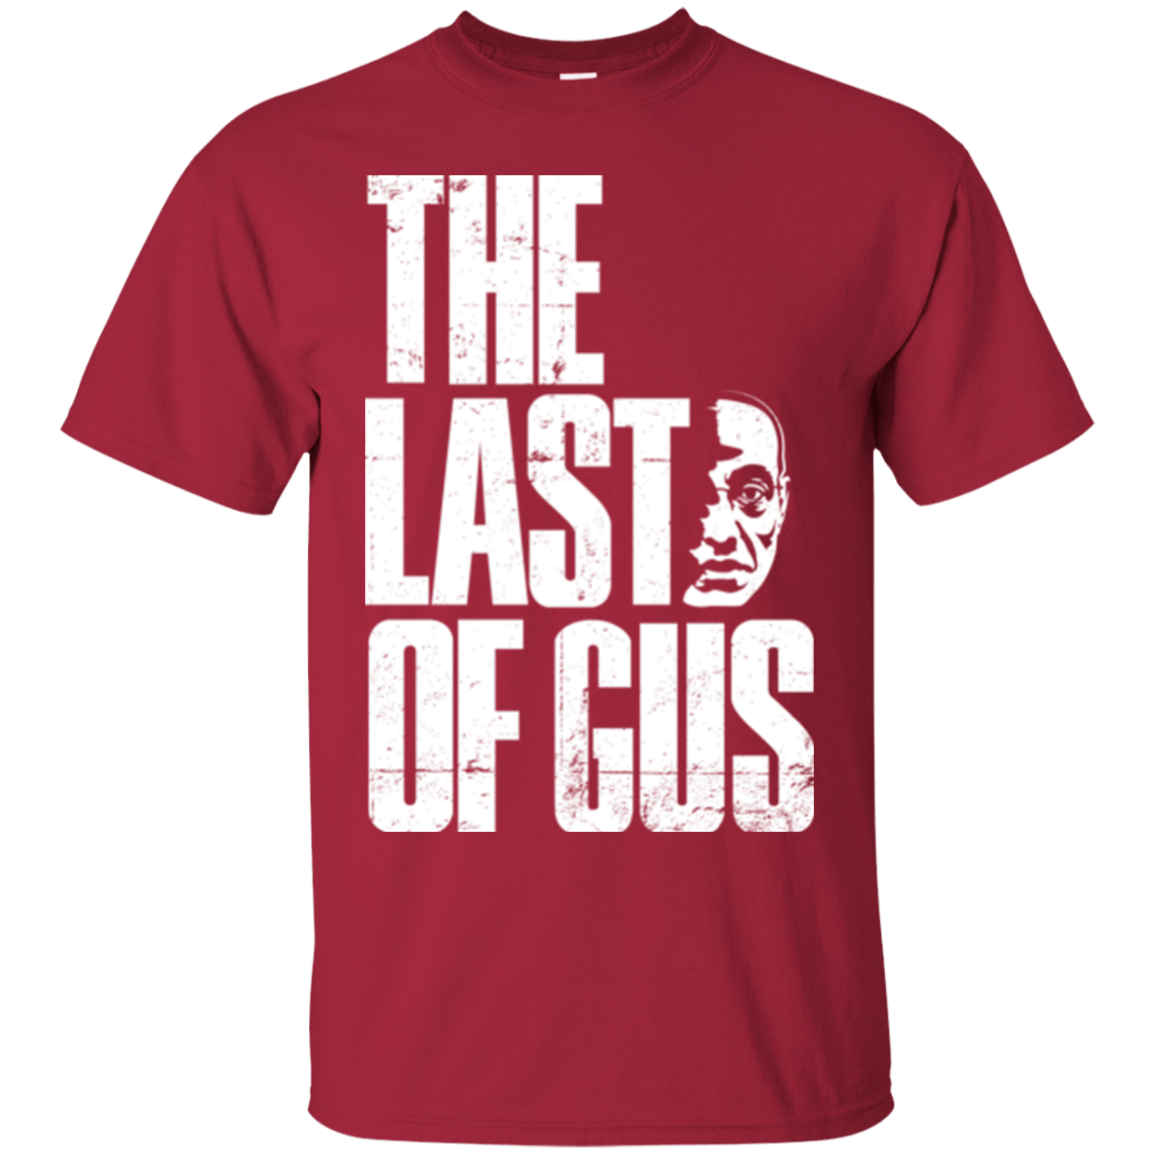 T-Shirts Cardinal / Small Last of Gus T-Shirt